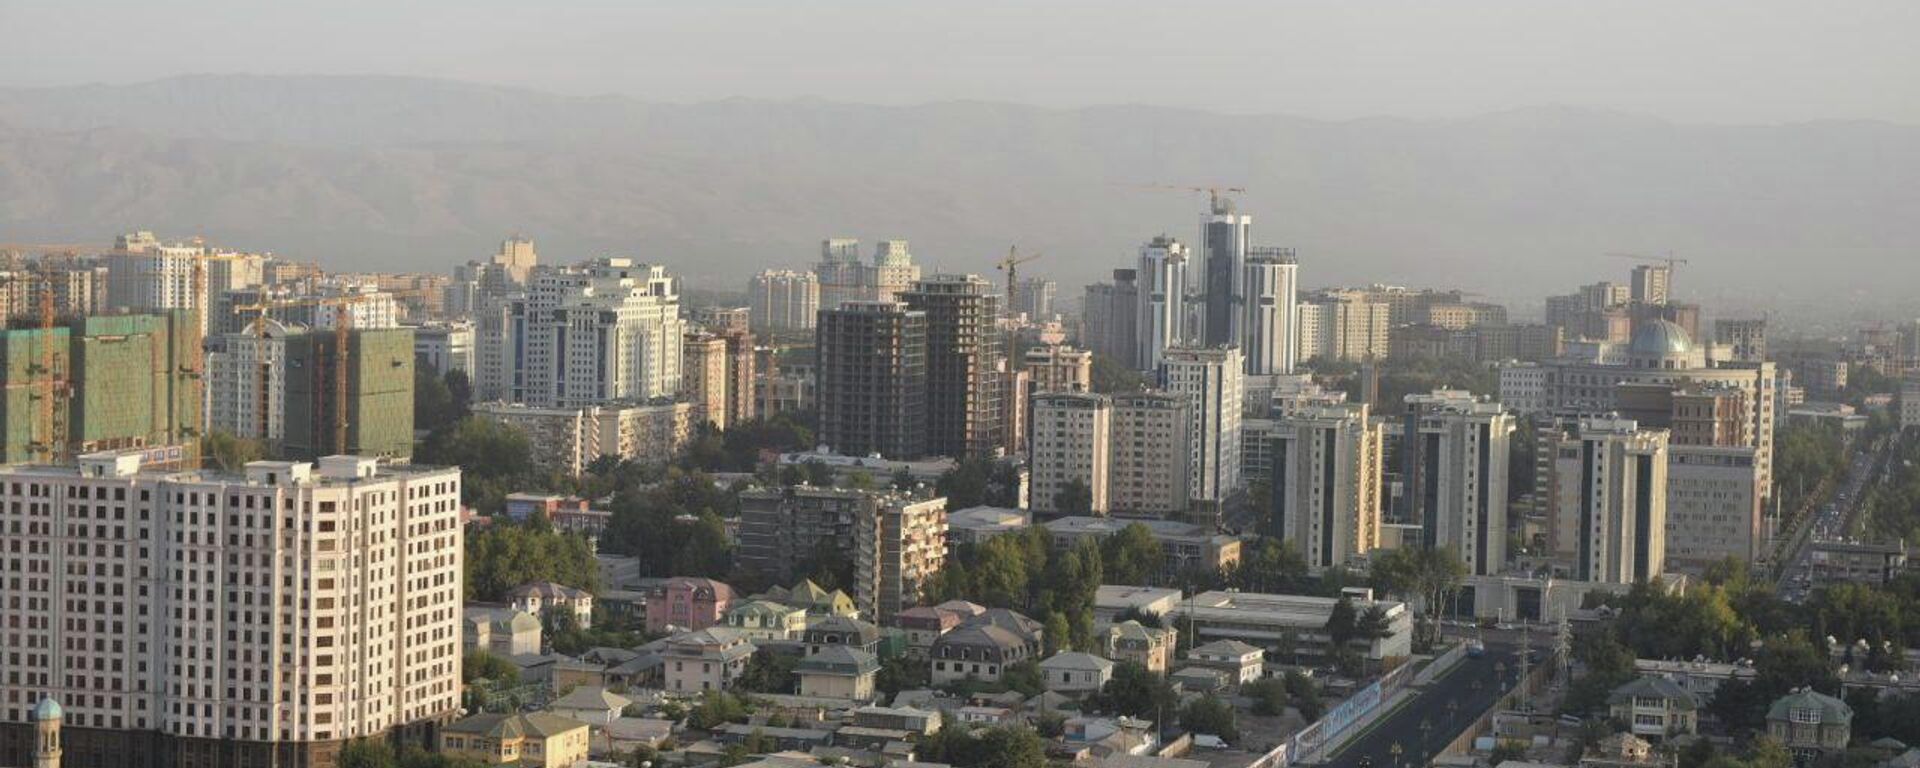 Панорама города Душанбе с высоты - Sputnik Тоҷикистон, 1920, 24.09.2022